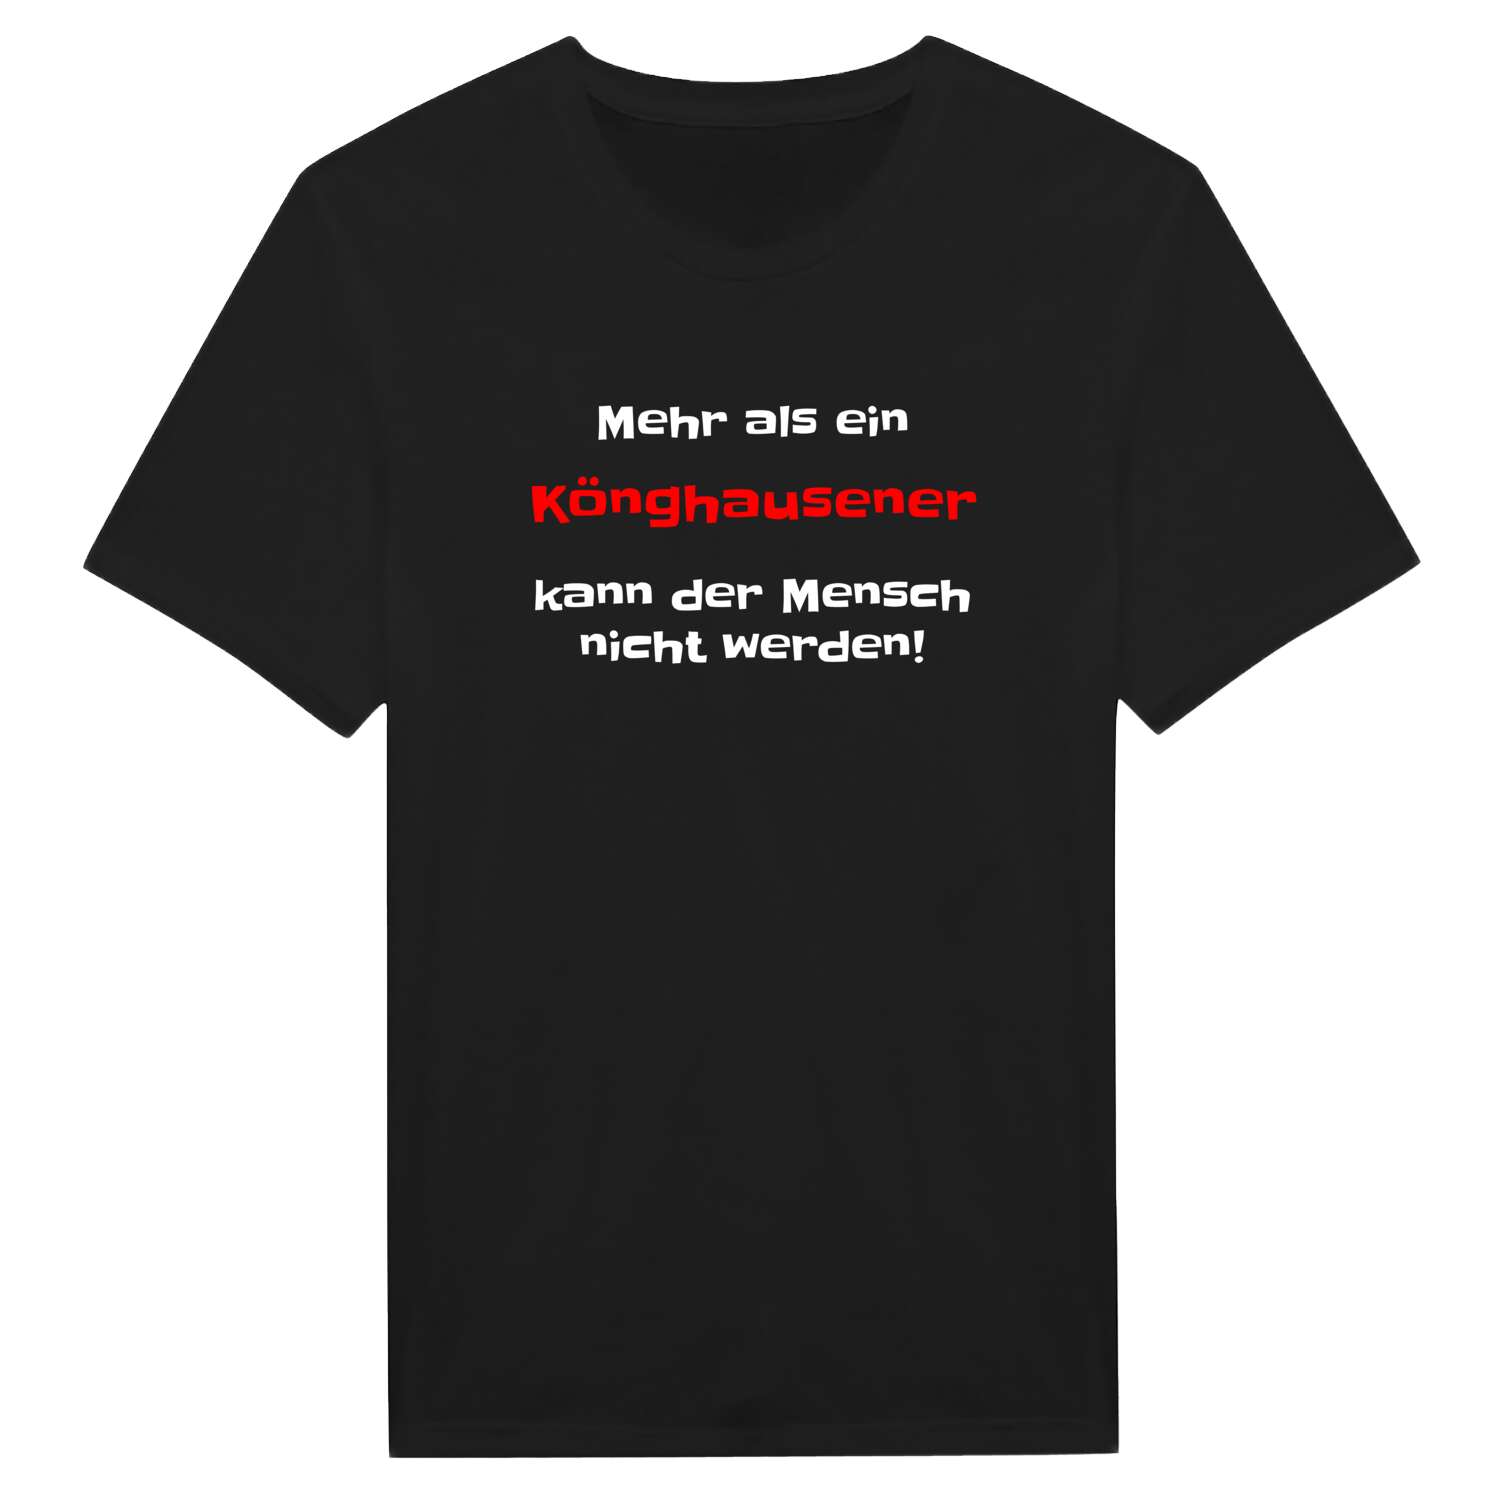 Könghausen T-Shirt »Mehr als ein«